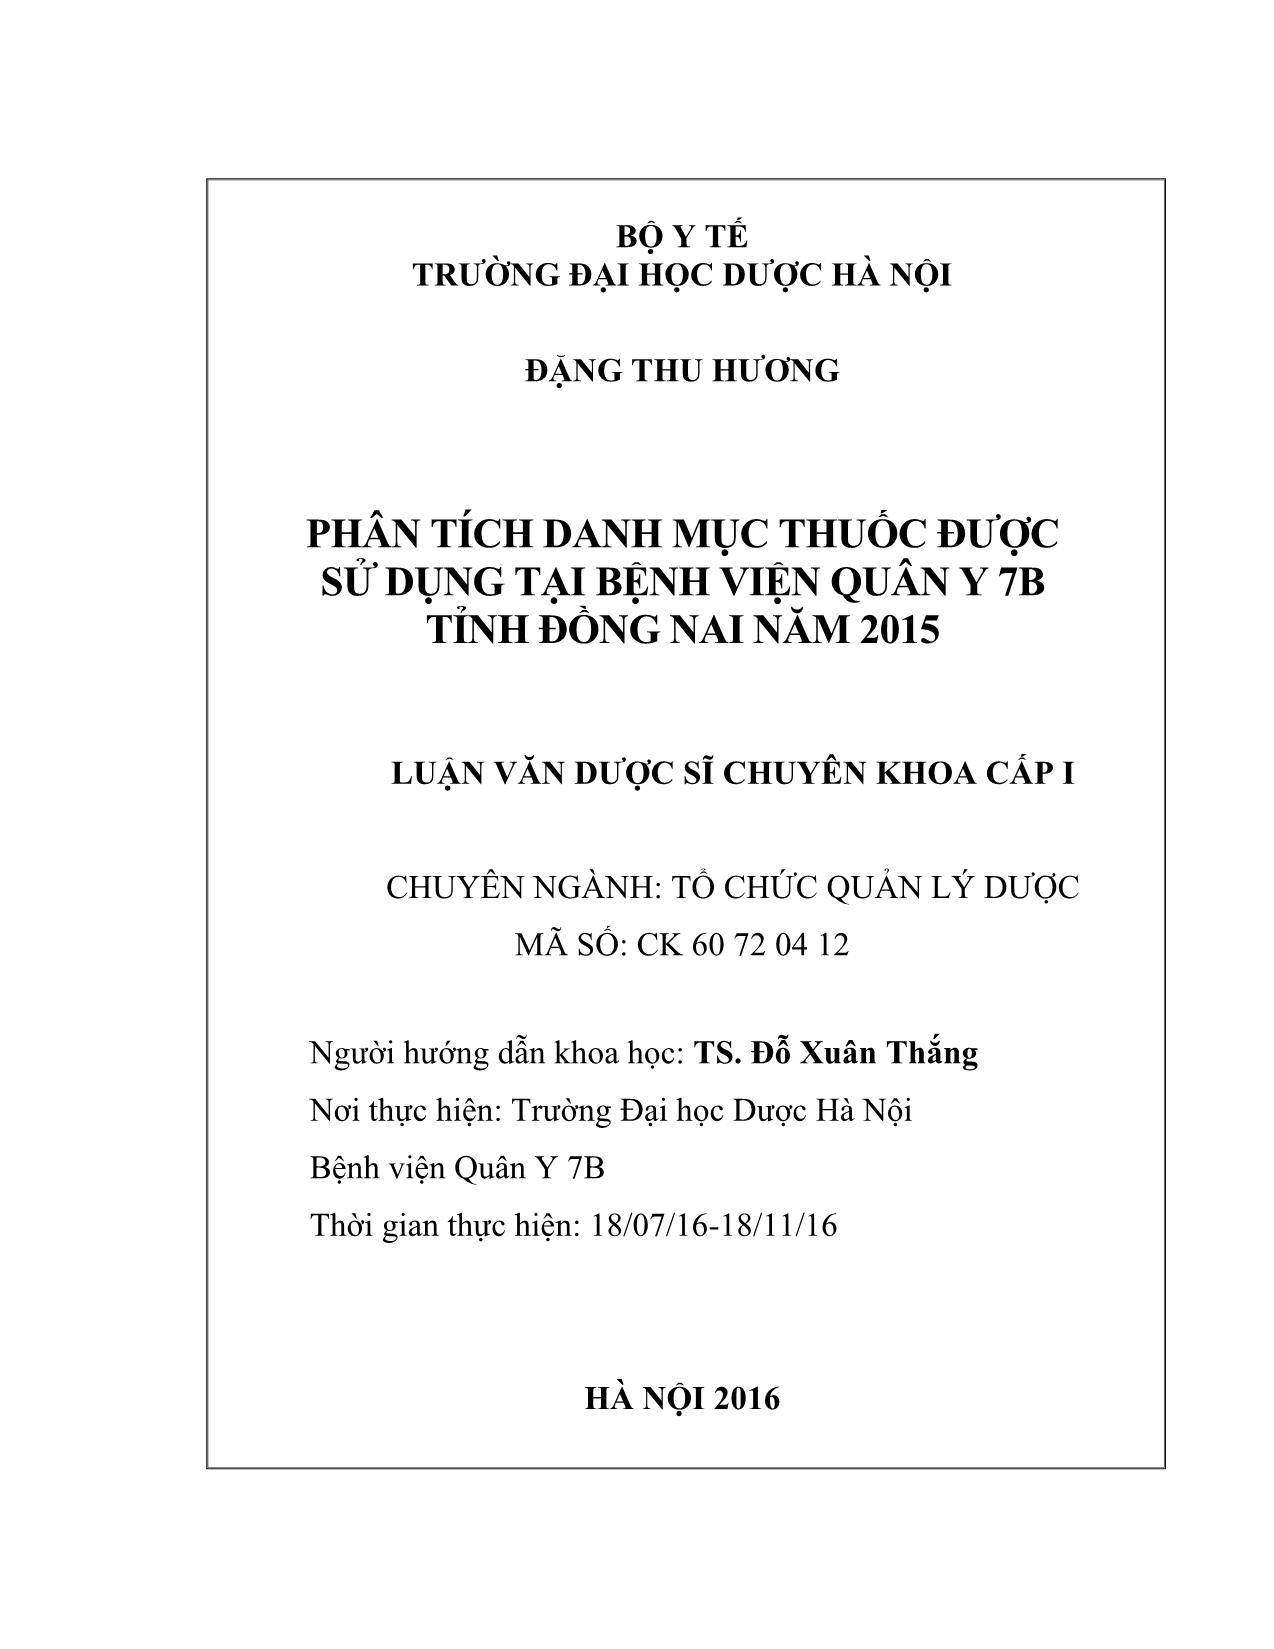 Phân tích danh mục thuốc được sử dụng tại bệnh viện quân y 7B tỉnh Đồng nai năm 2015 trang 2